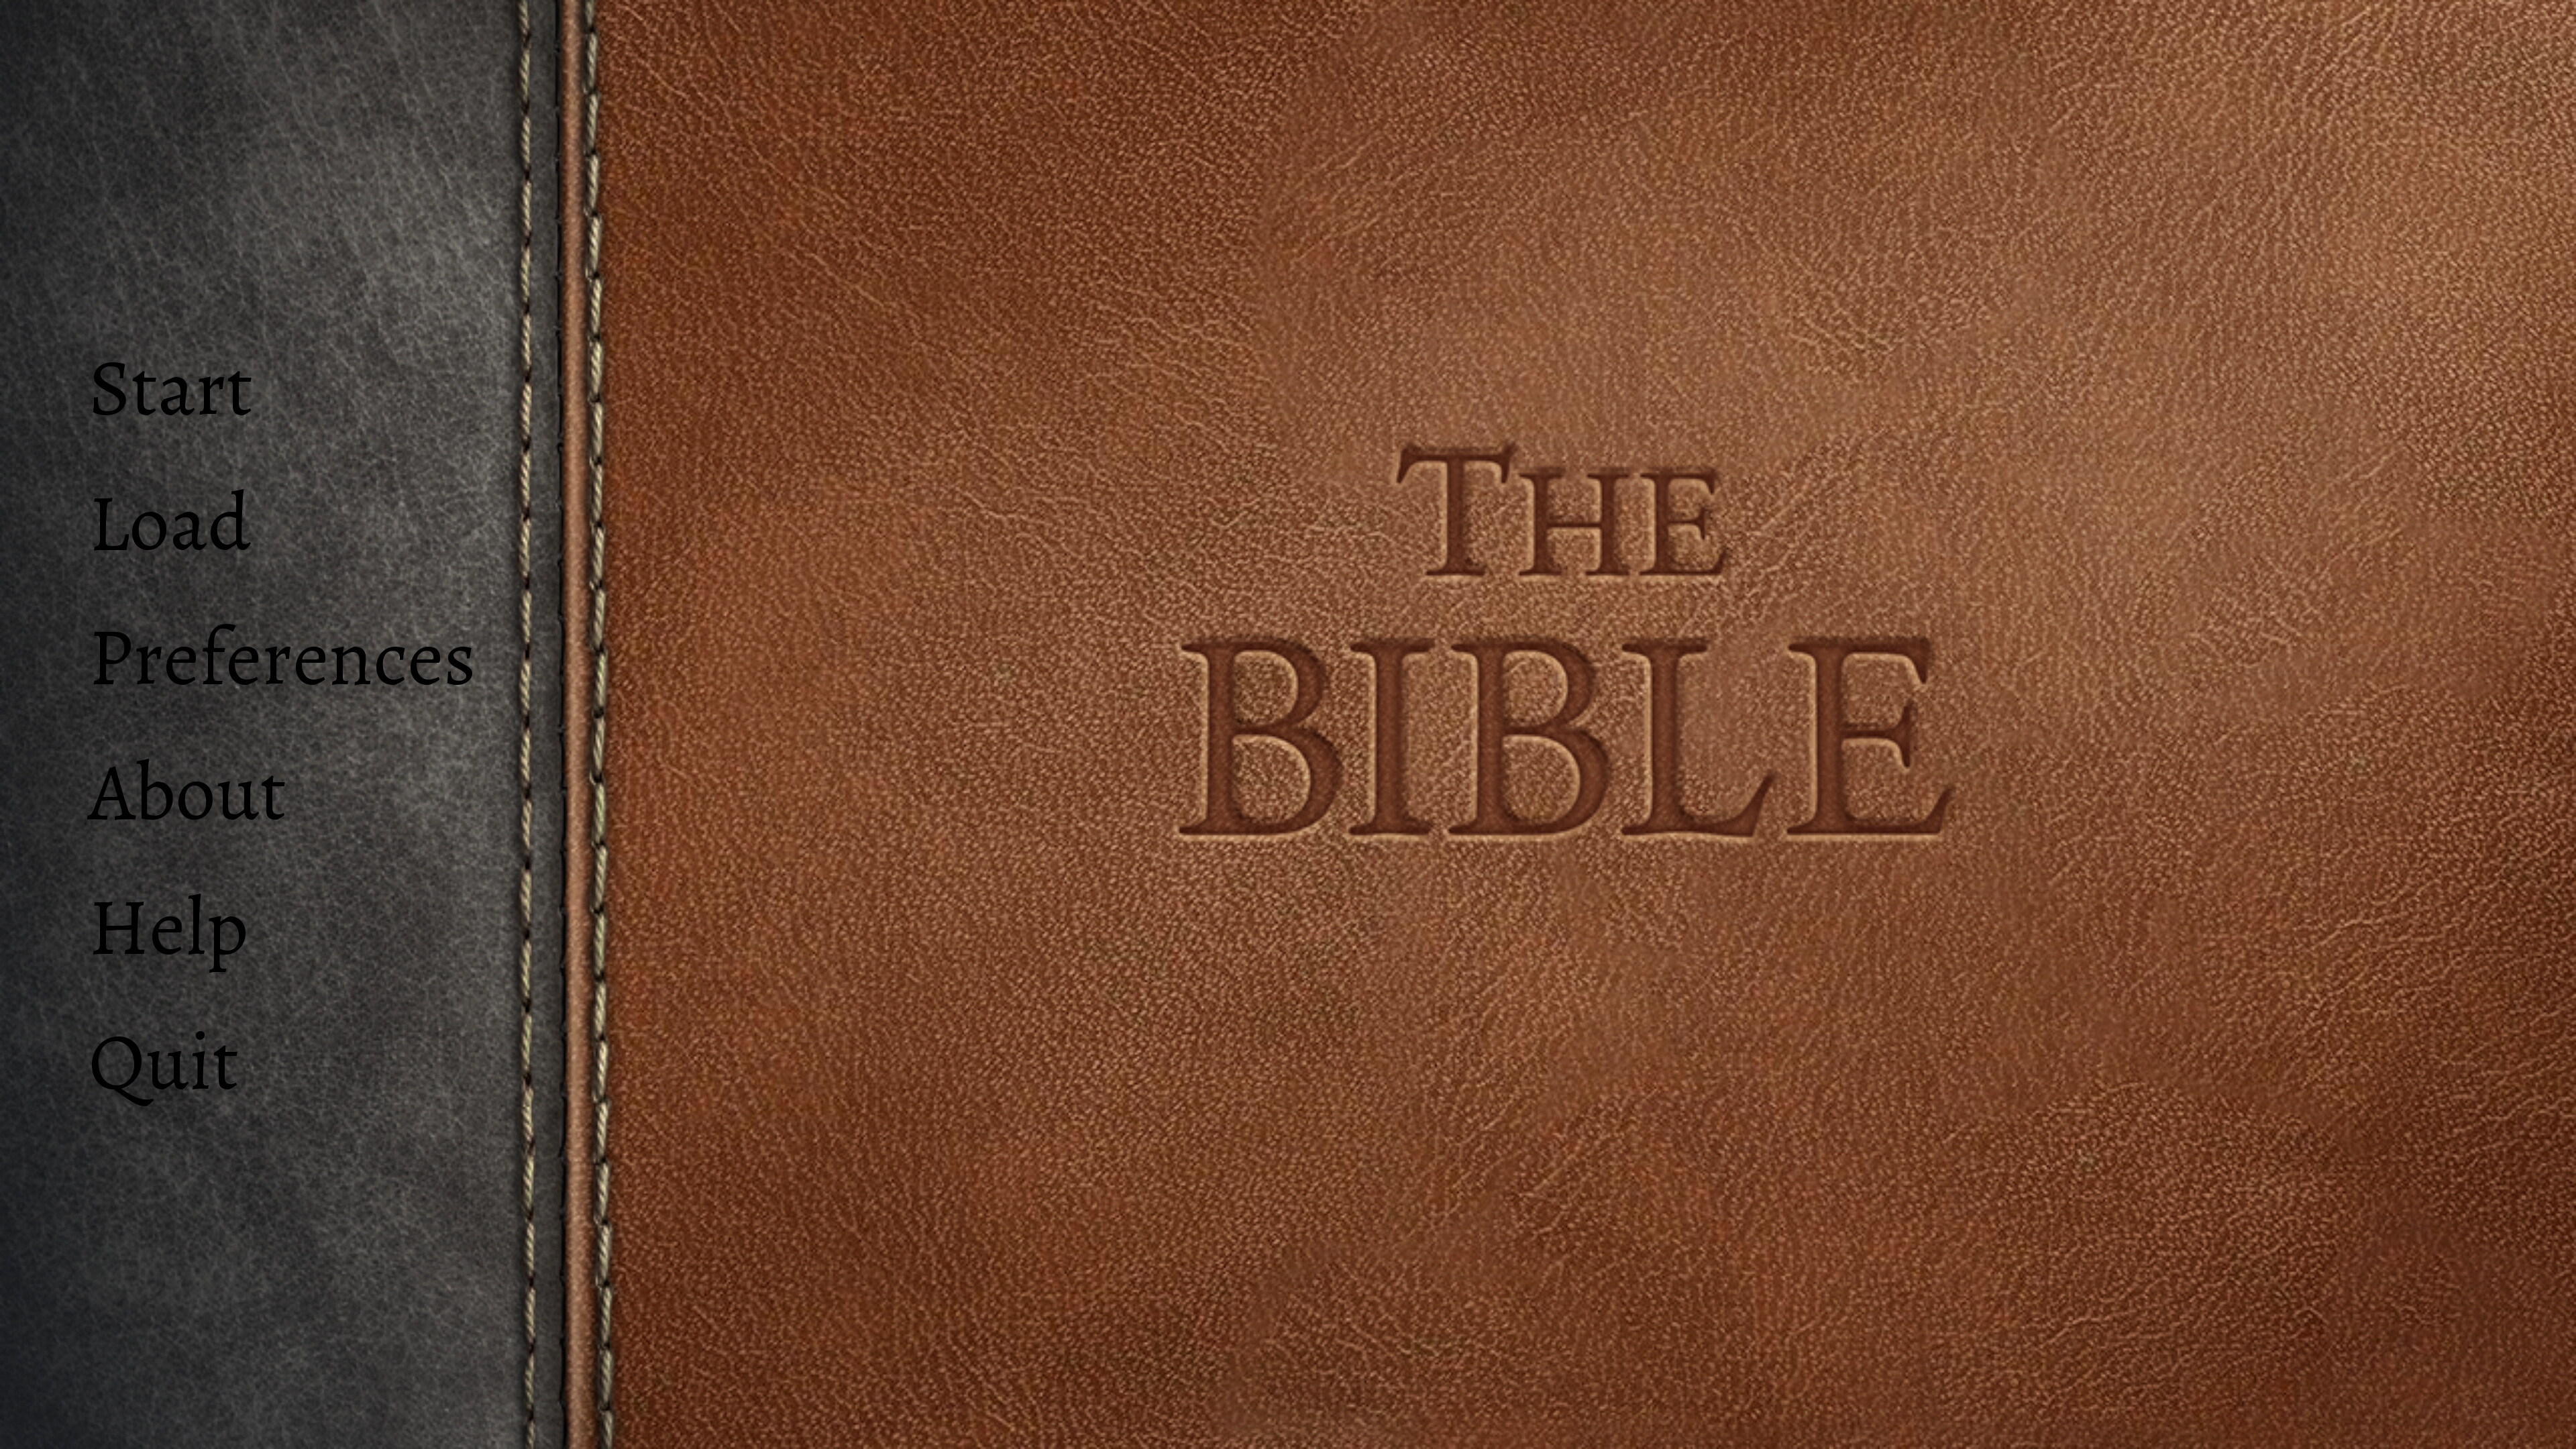 世界最畅销书《圣经》登陆Steam 灵活阅读随时存储